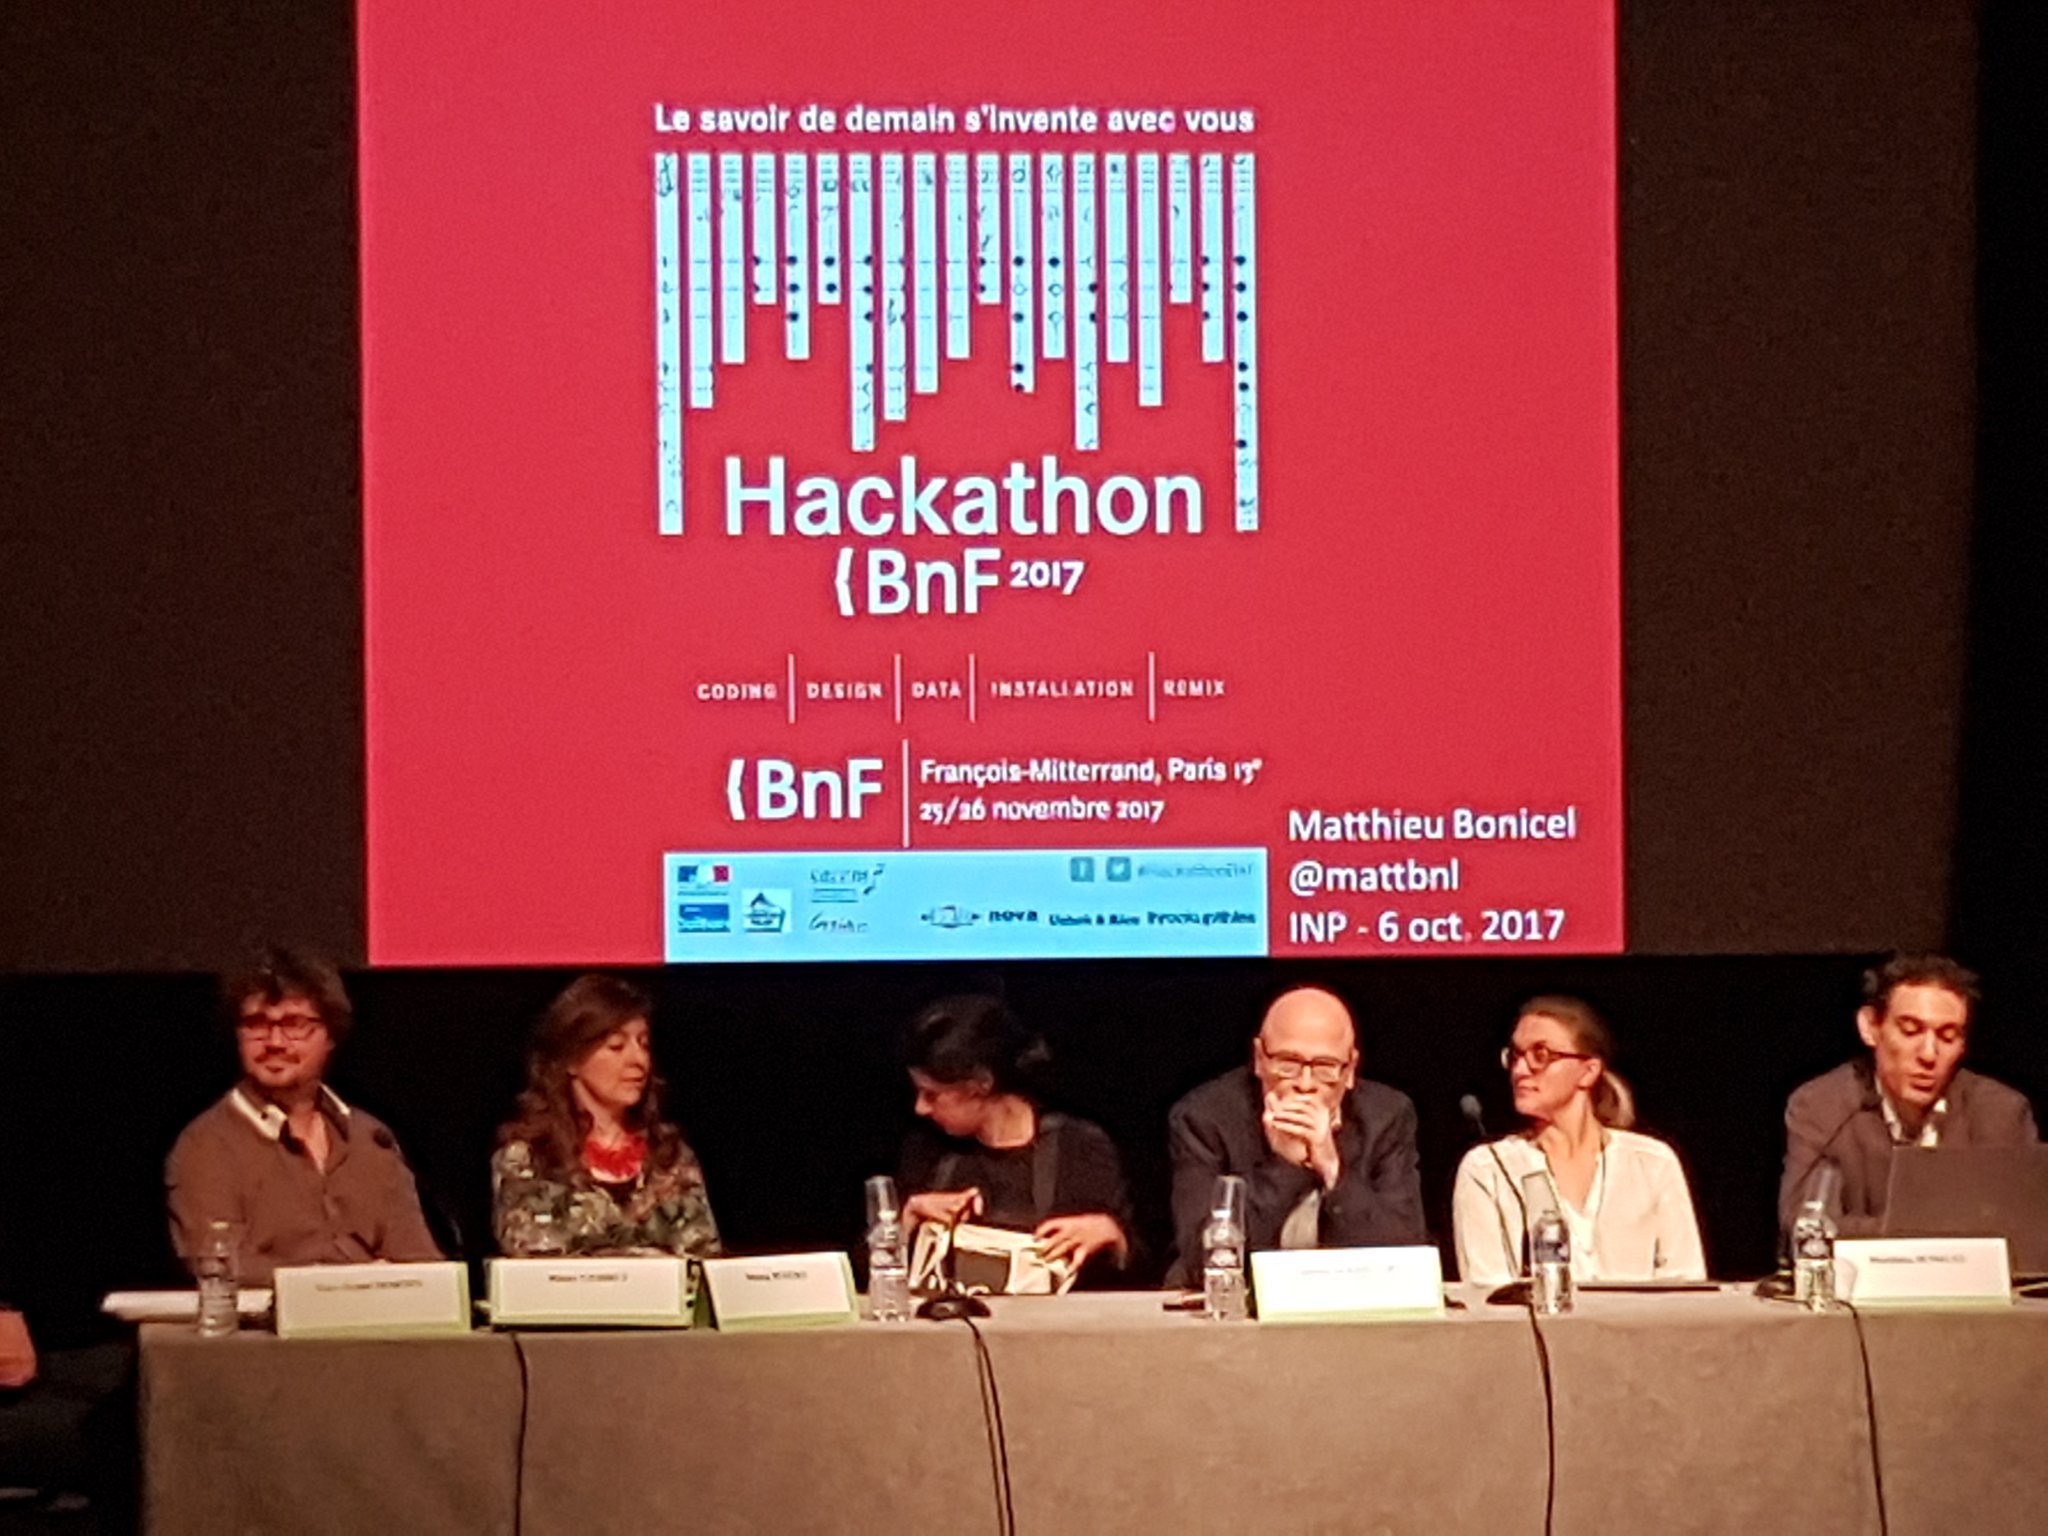 .@mattbnl de @laBnF on stage pour présenter le #HackathonBnF #ParticiperParticipez https://t.co/YyHI4qBBKS